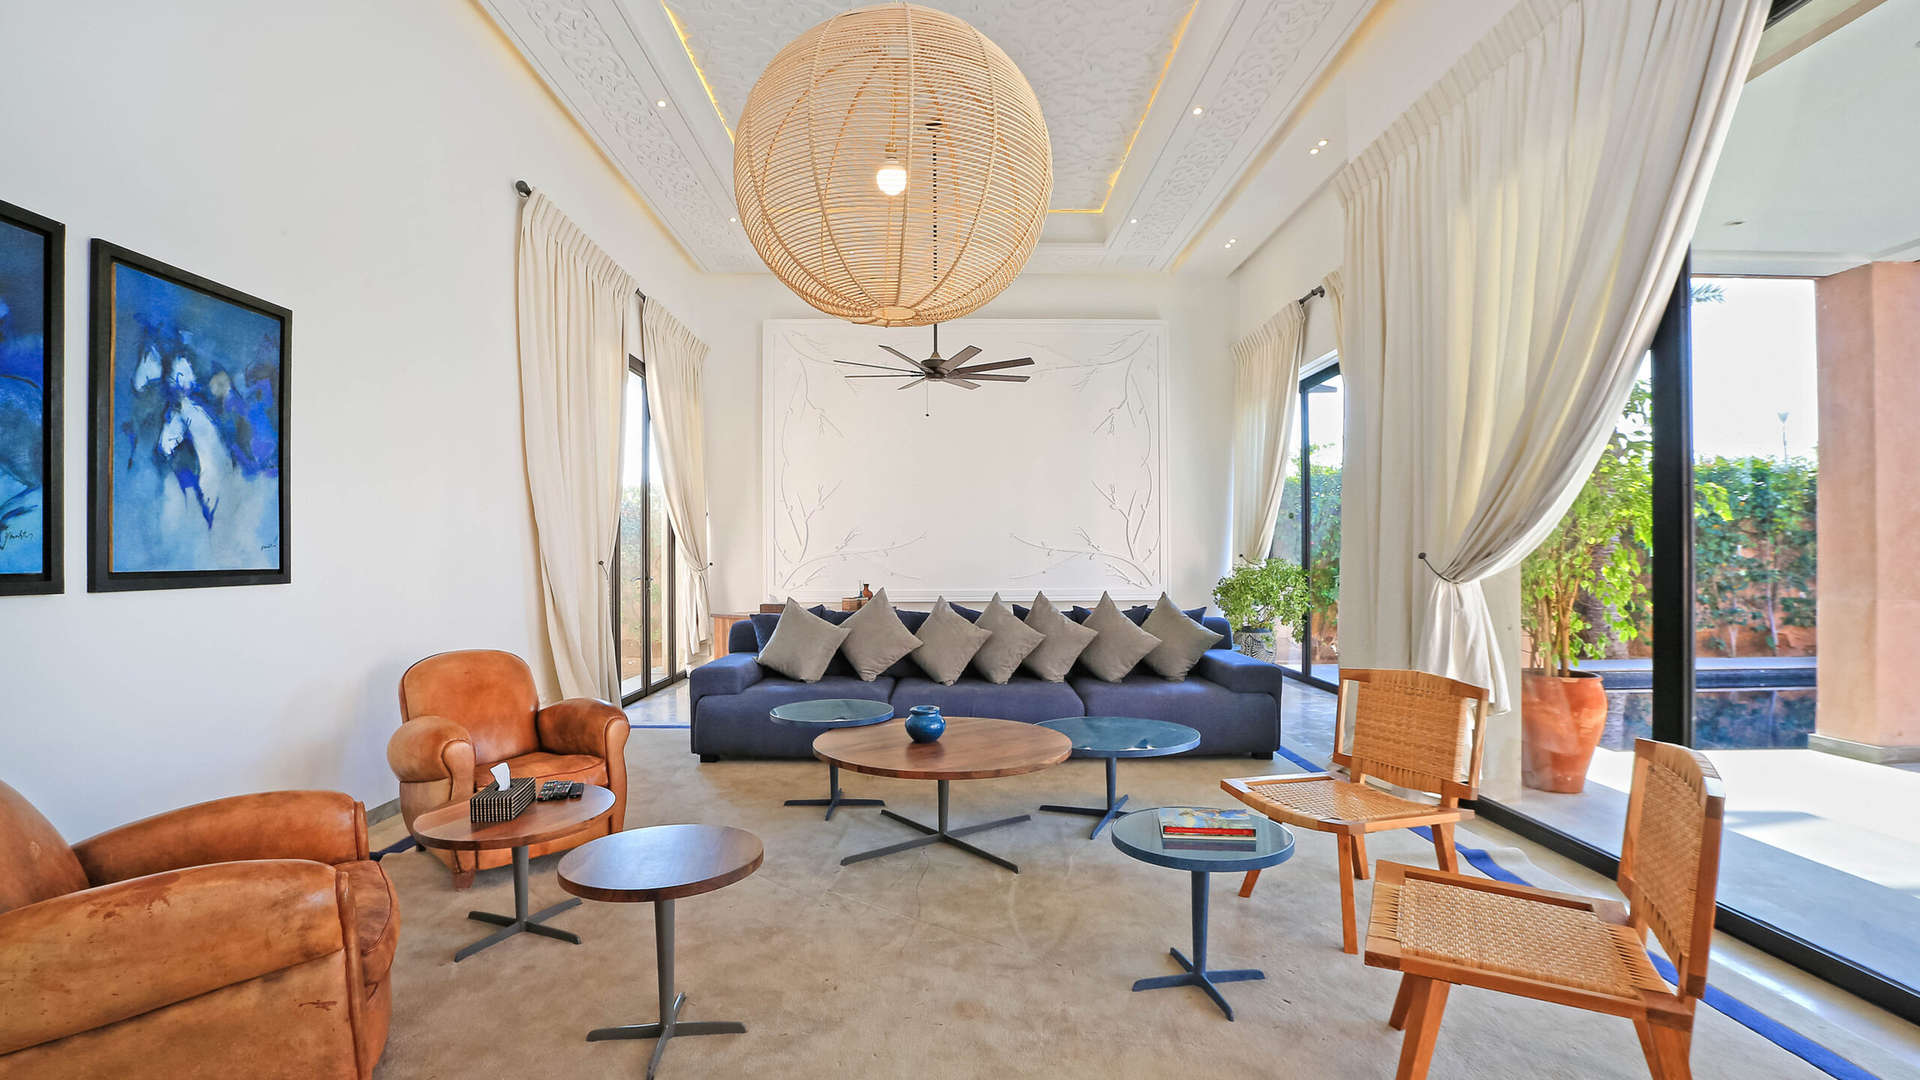 Location de vacances,Villa,Villa contemporaine privée pour 10 personnes située dans la palmeraie de Marrakech,Marrakech,Palmeraie